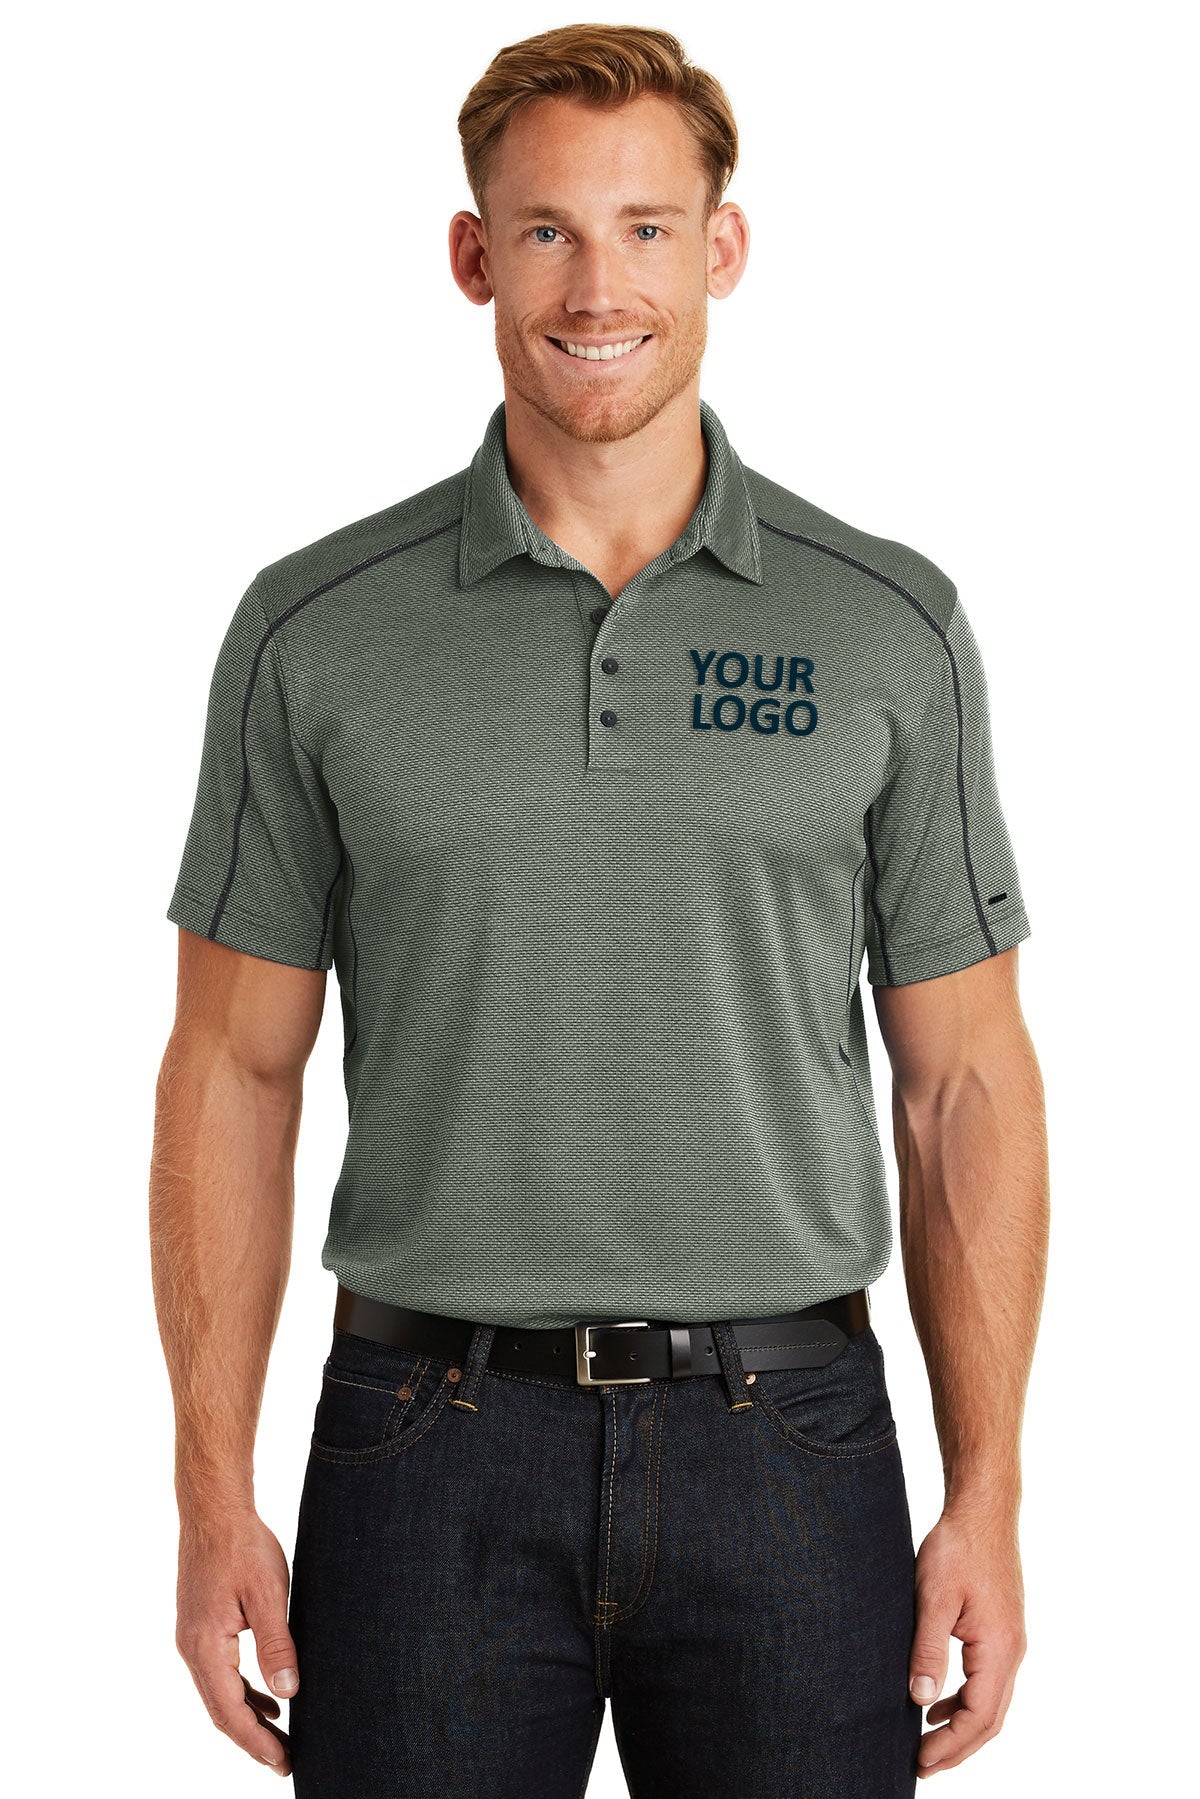 OGIO Blacktop/ Gear Grey OG133 custom polo shirts dri fit